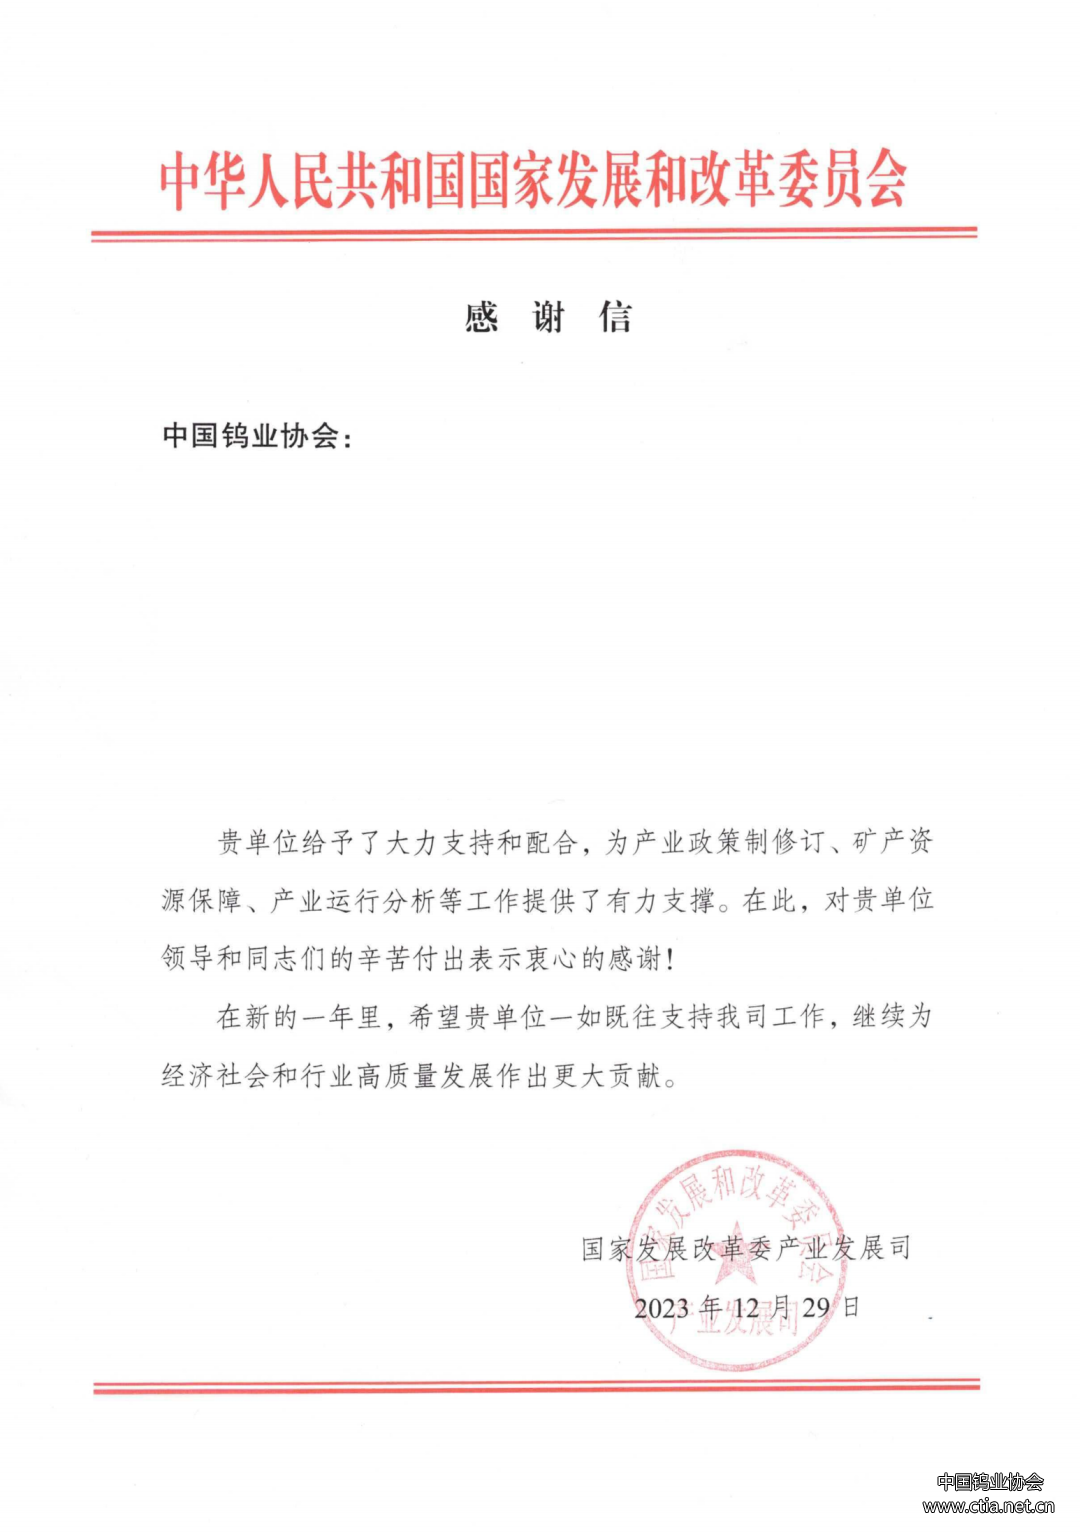 中国钨业协会收到的感谢信图片